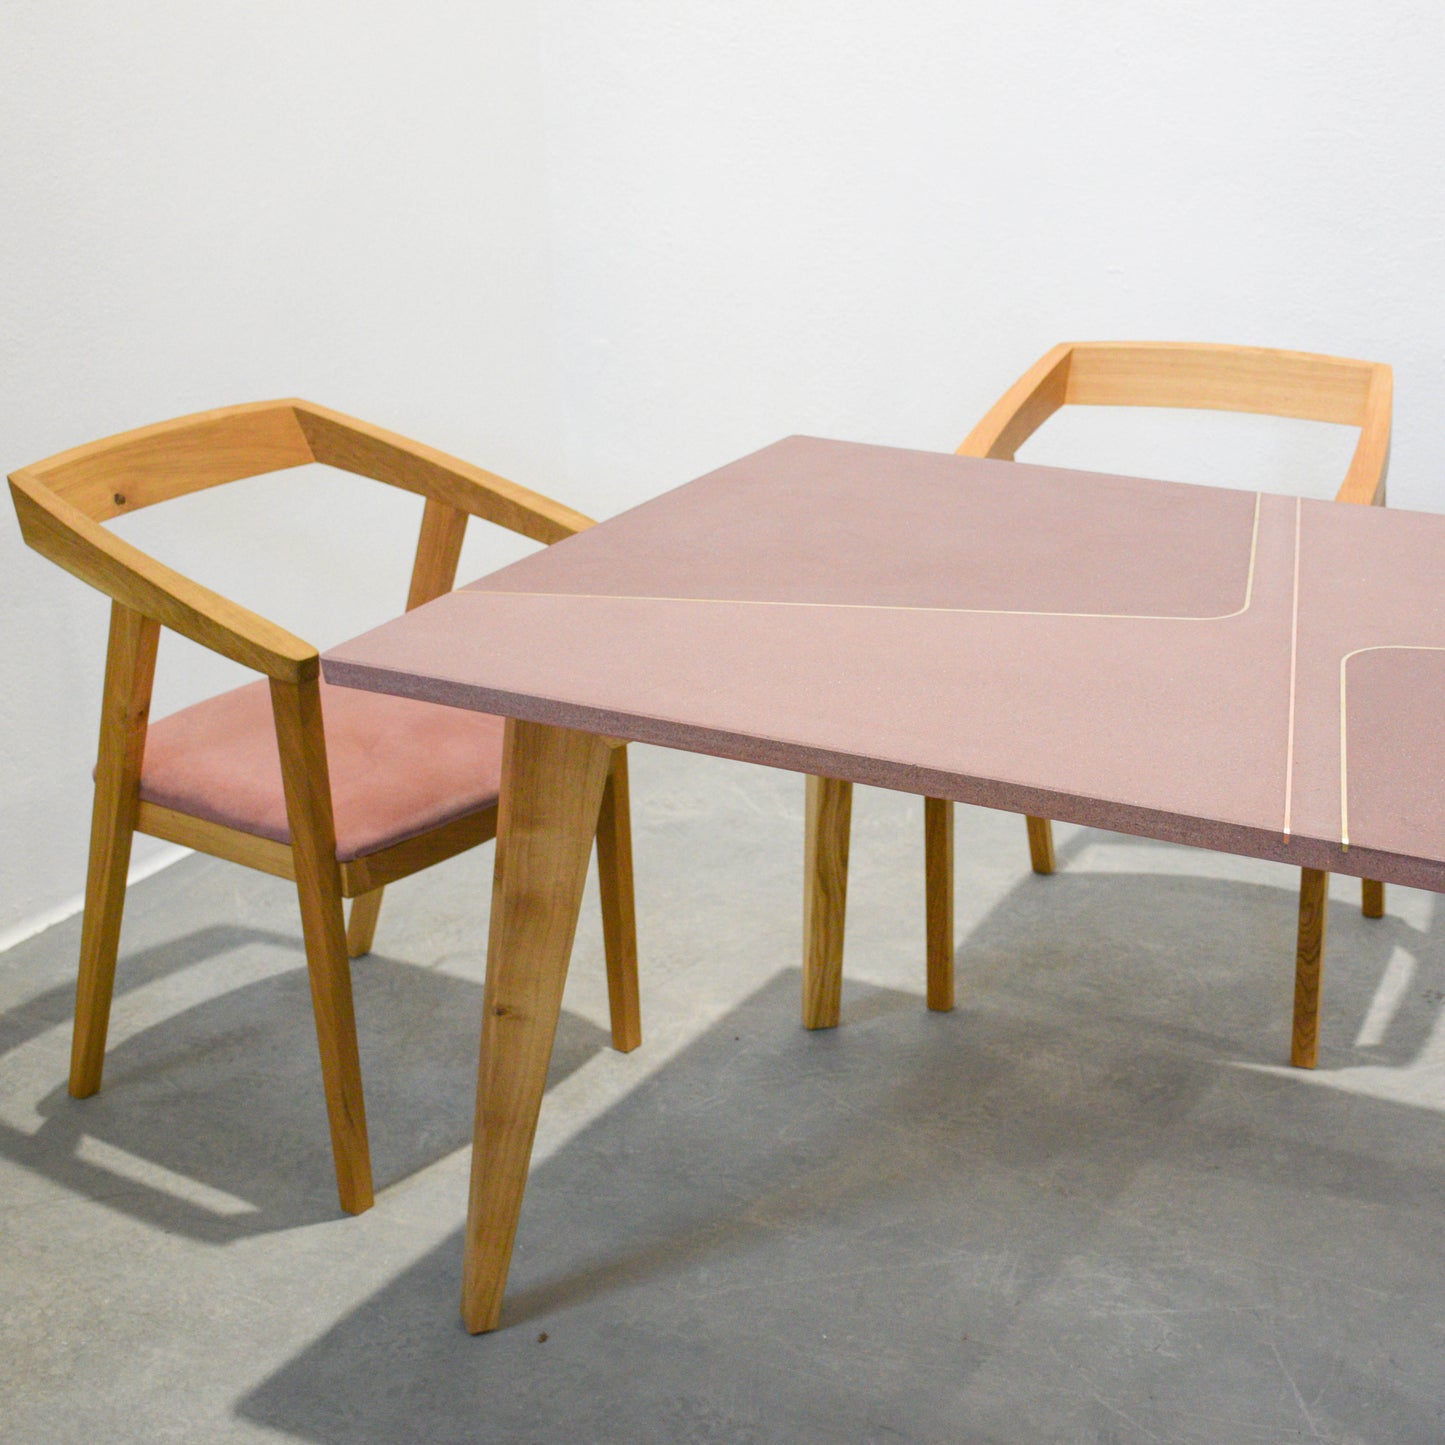 Színes beton étkezőasztal, sárgaréz berakásokkal, tömör tölgyfa lábakon, 6 személy számára, 160 x 90 cm | 0015 sz